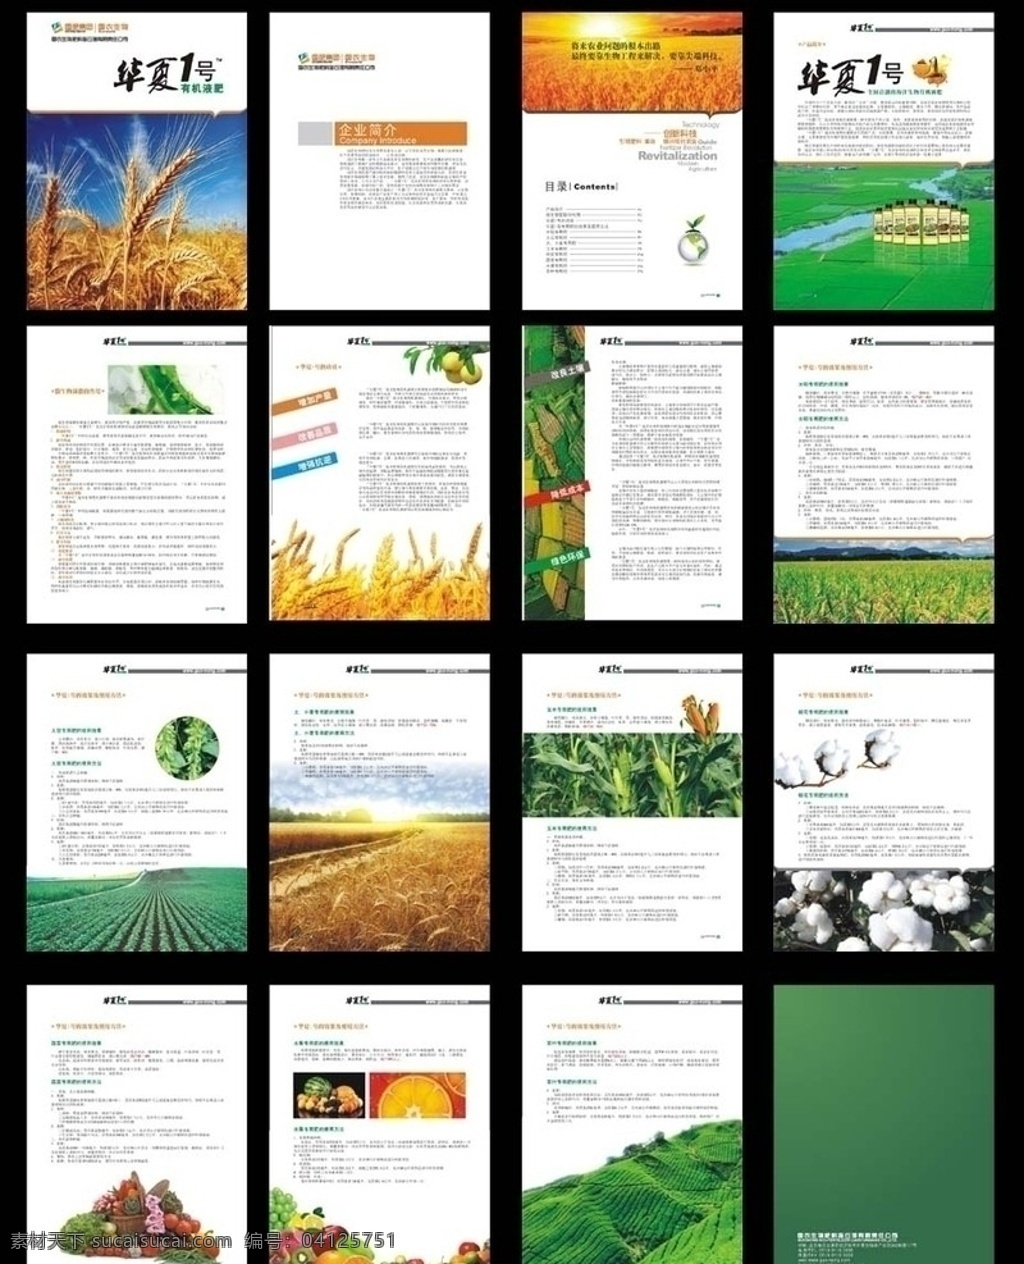 生物肥料画册 肥料 生物肥料 农业画册 样本 宣传册 画册设计 矢量